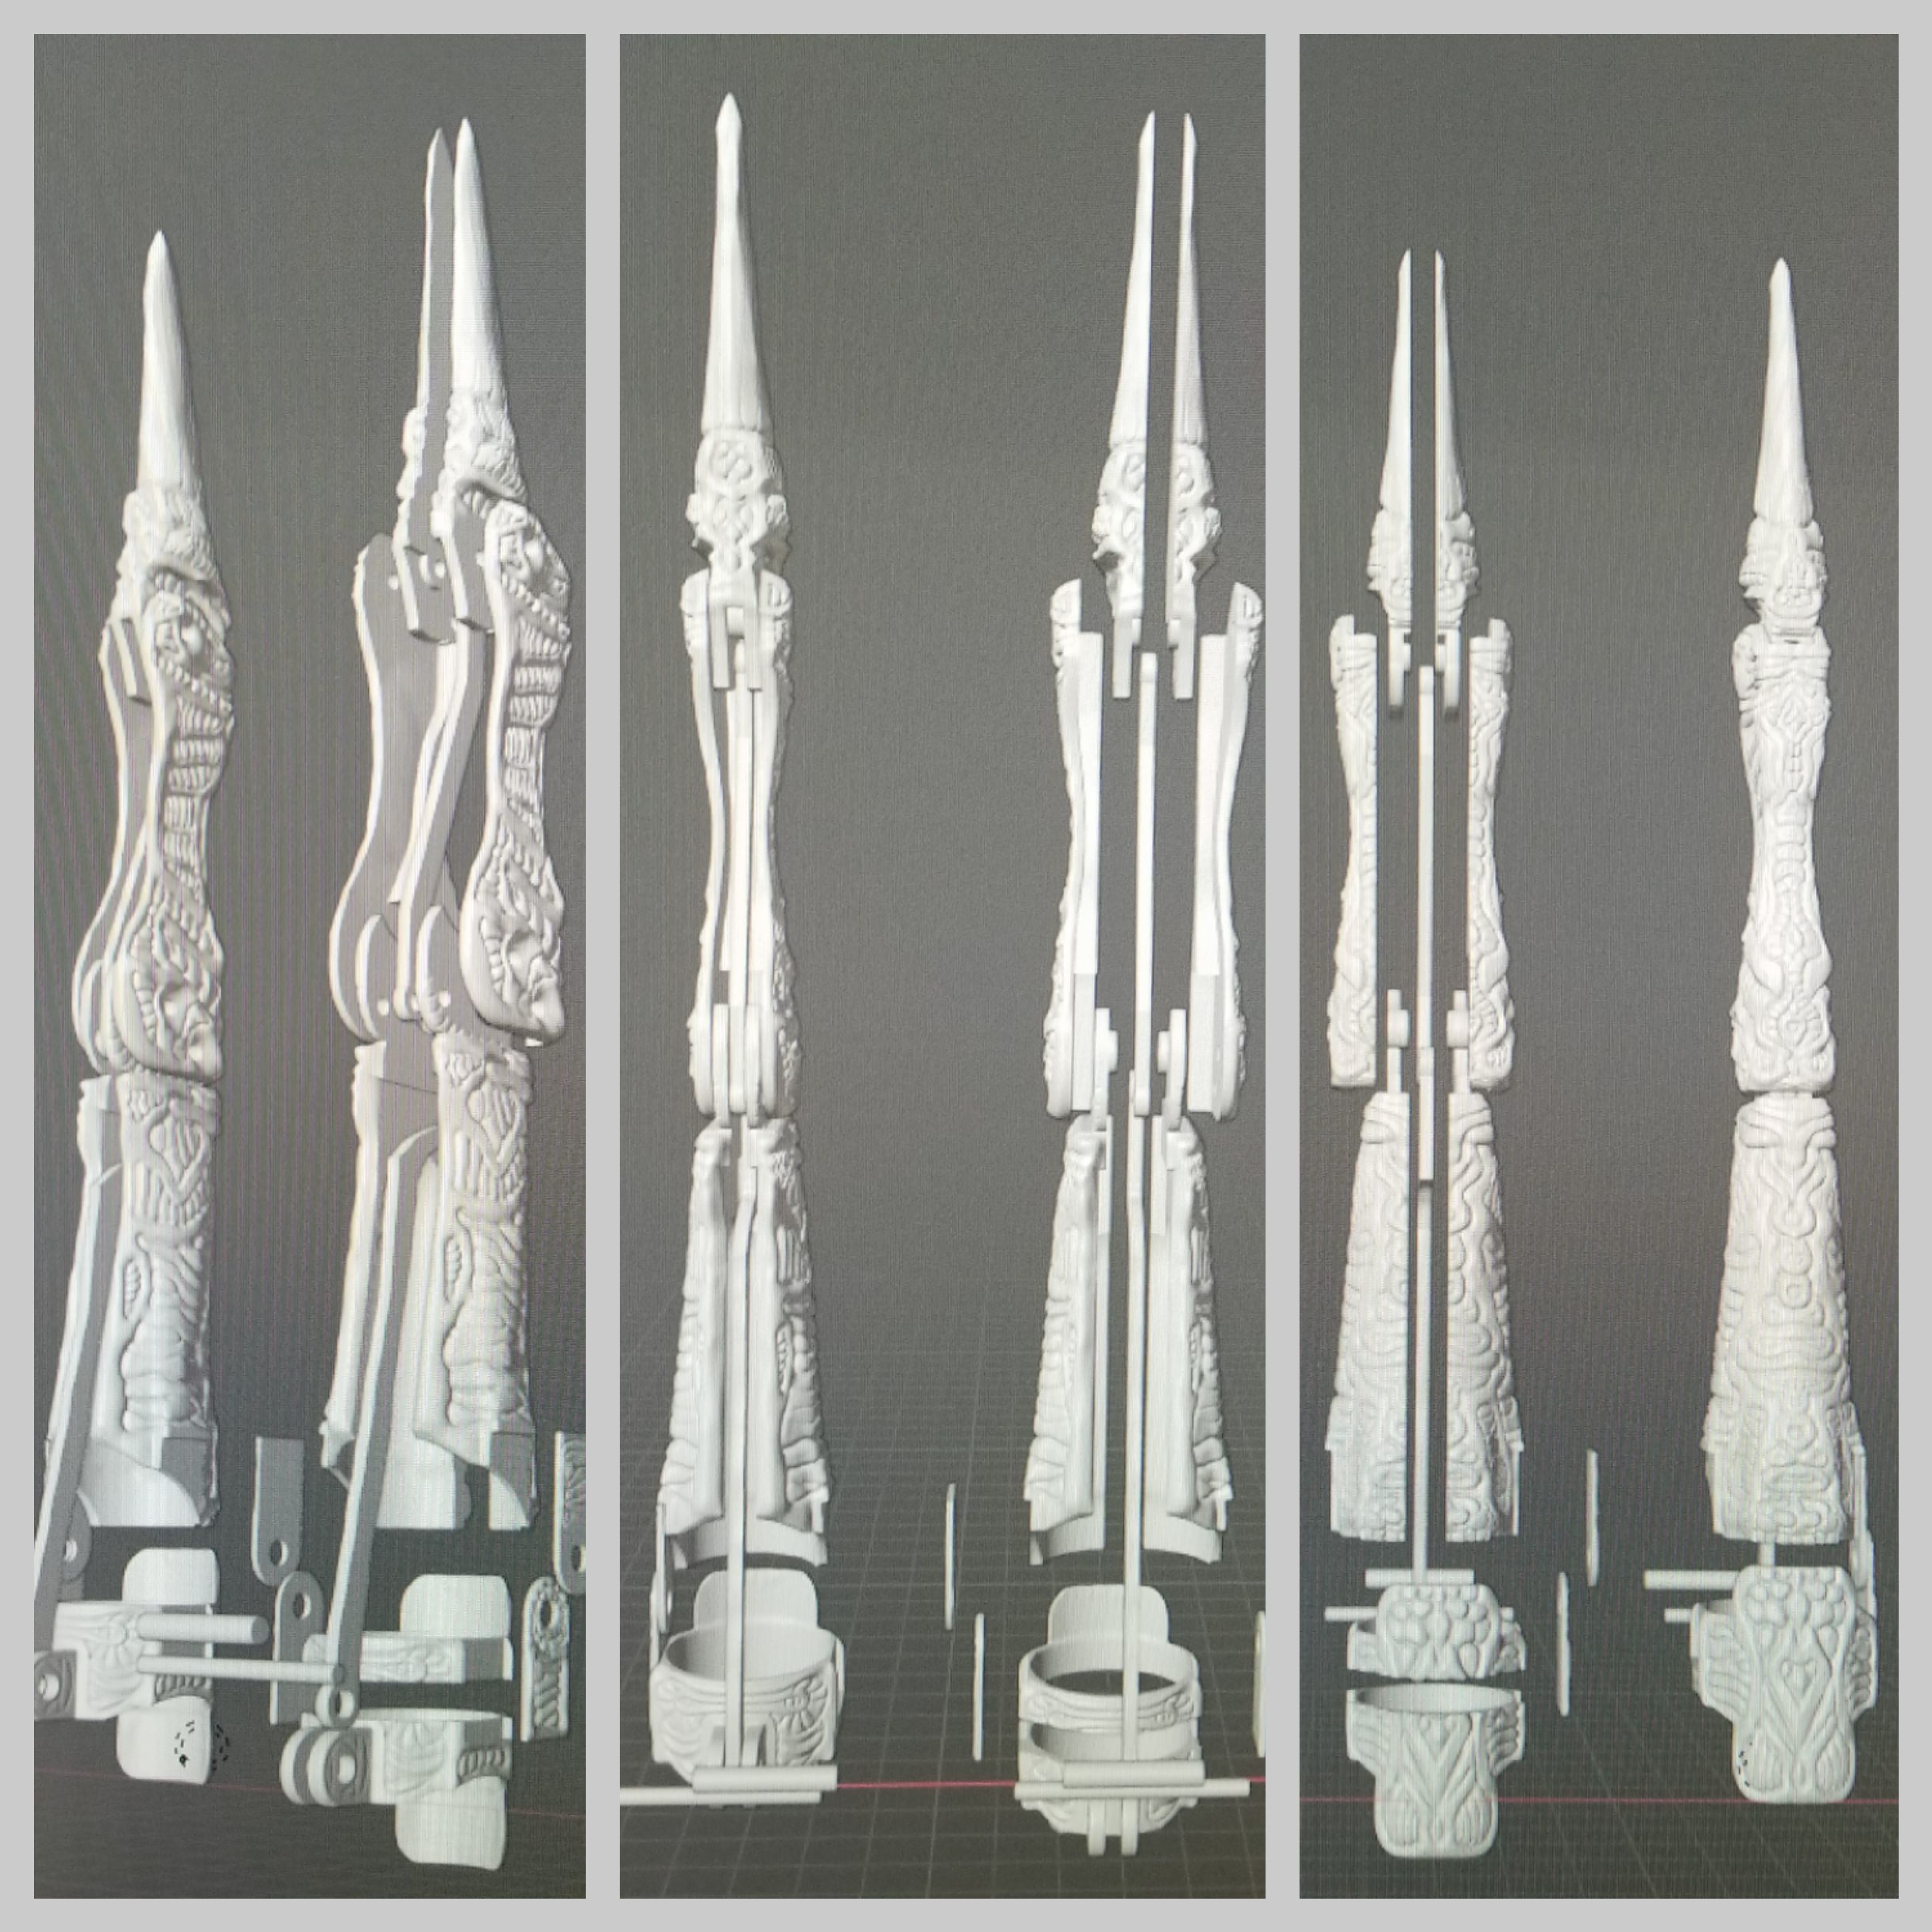 20200511_020036.jpg Download STL file Biomechanical fingers • 3D printing model, LittleTup